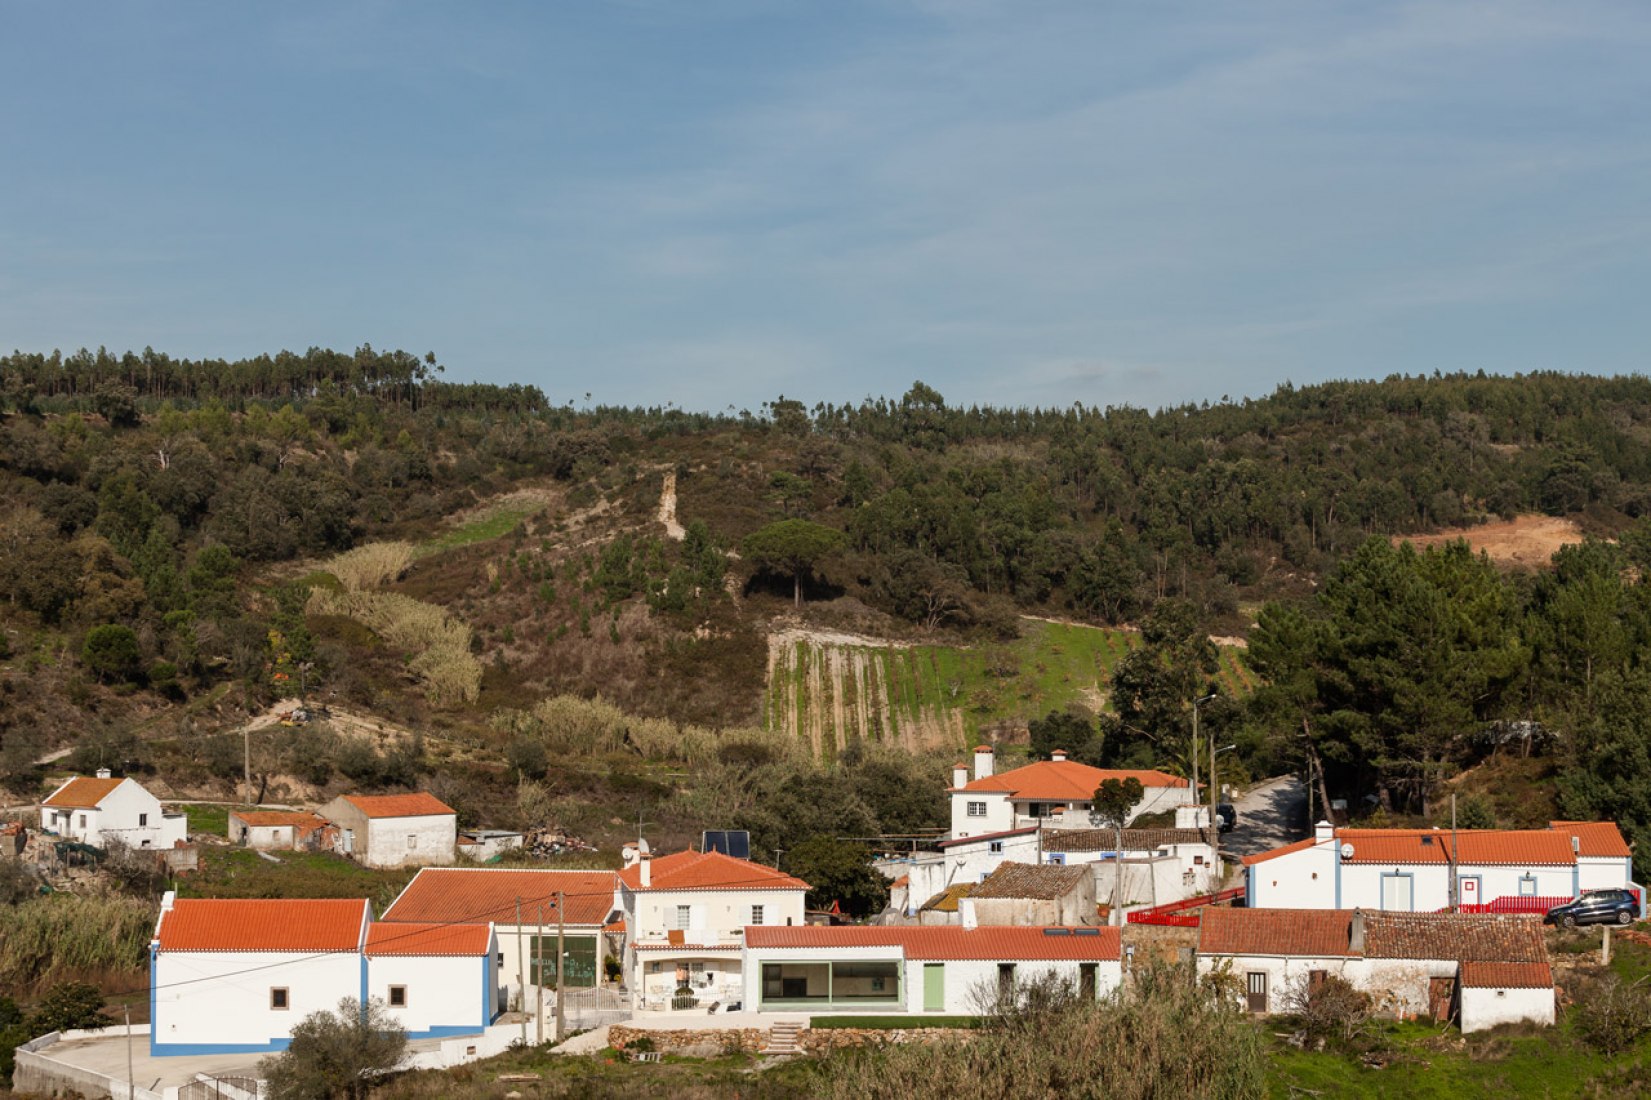 Vista de la Casa Chanca diseñada por Manuel Cachão Tojal. Fotografía © Francisco Nogueira.